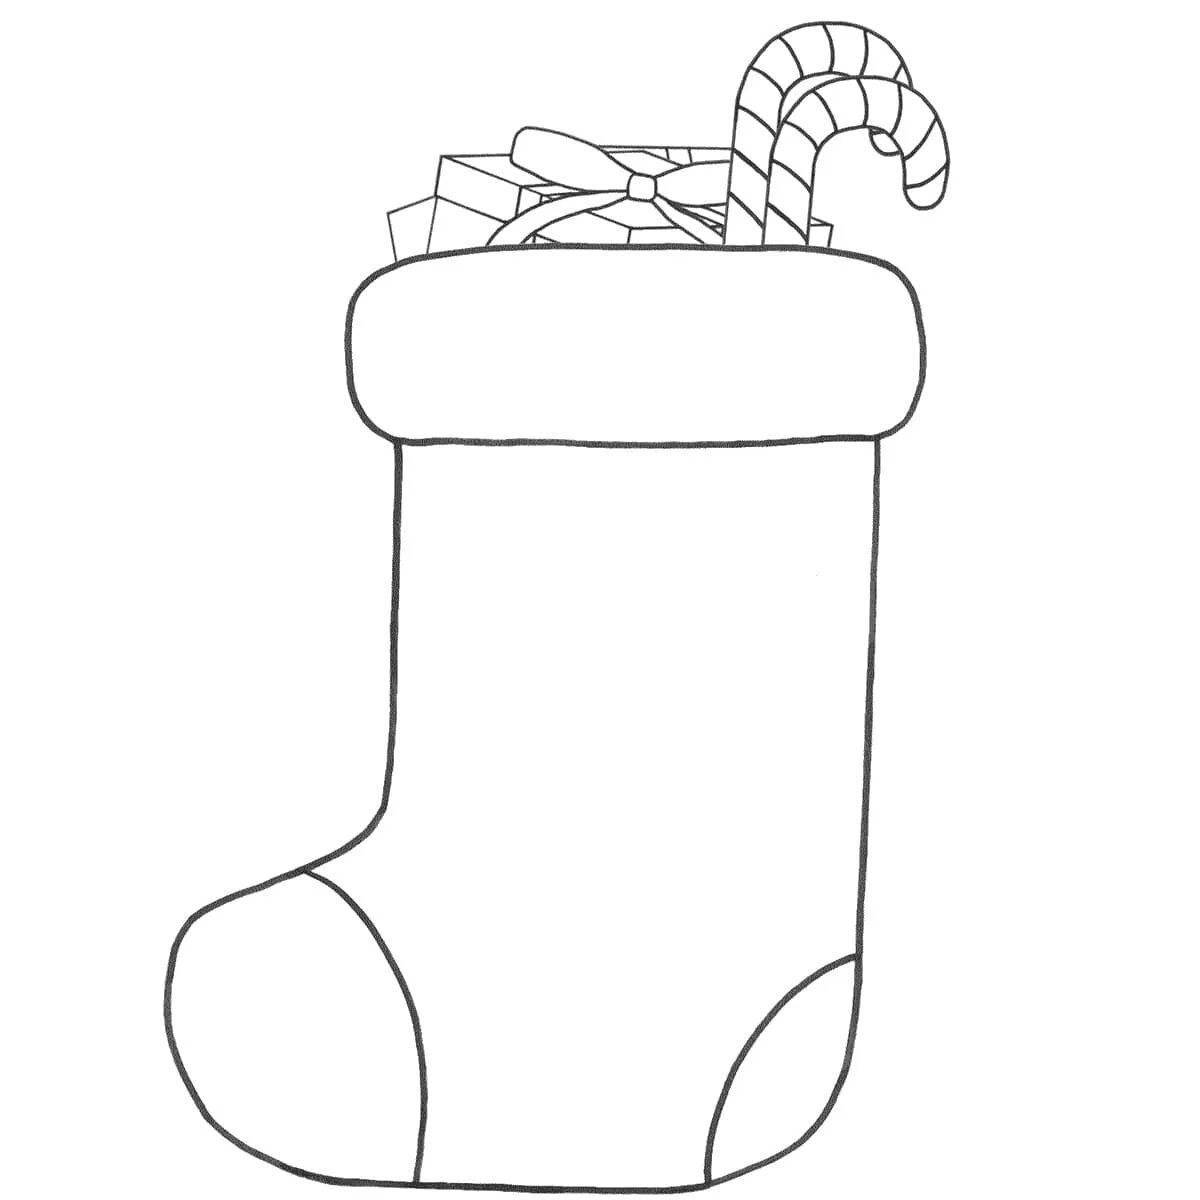 Christmas socks live coloring page